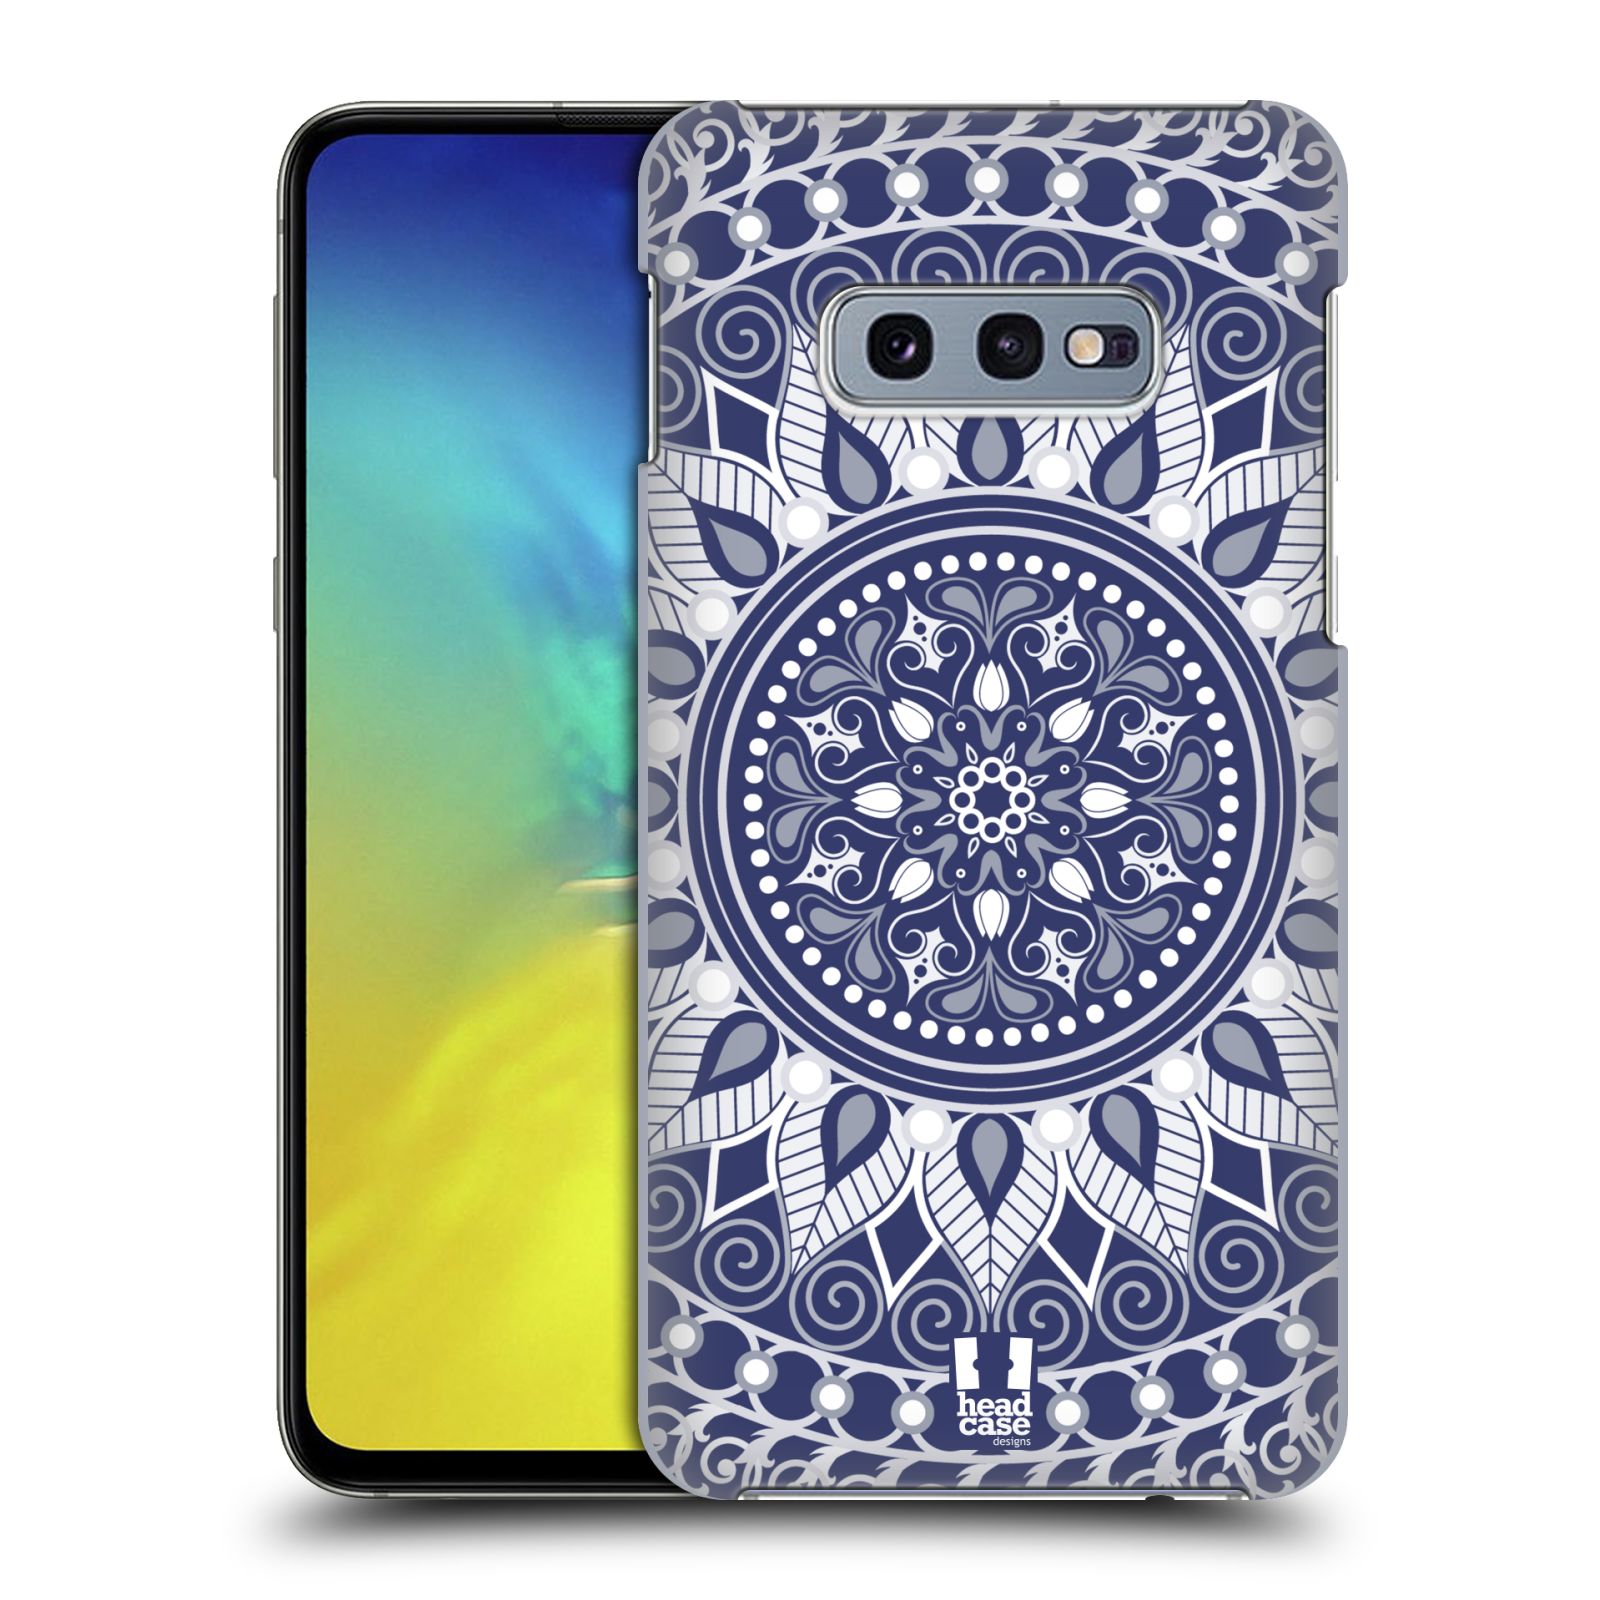 Pouzdro na mobil Samsung Galaxy S10e - HEAD CASE - vzor Indie Mandala slunce barevný motiv MODRÁ